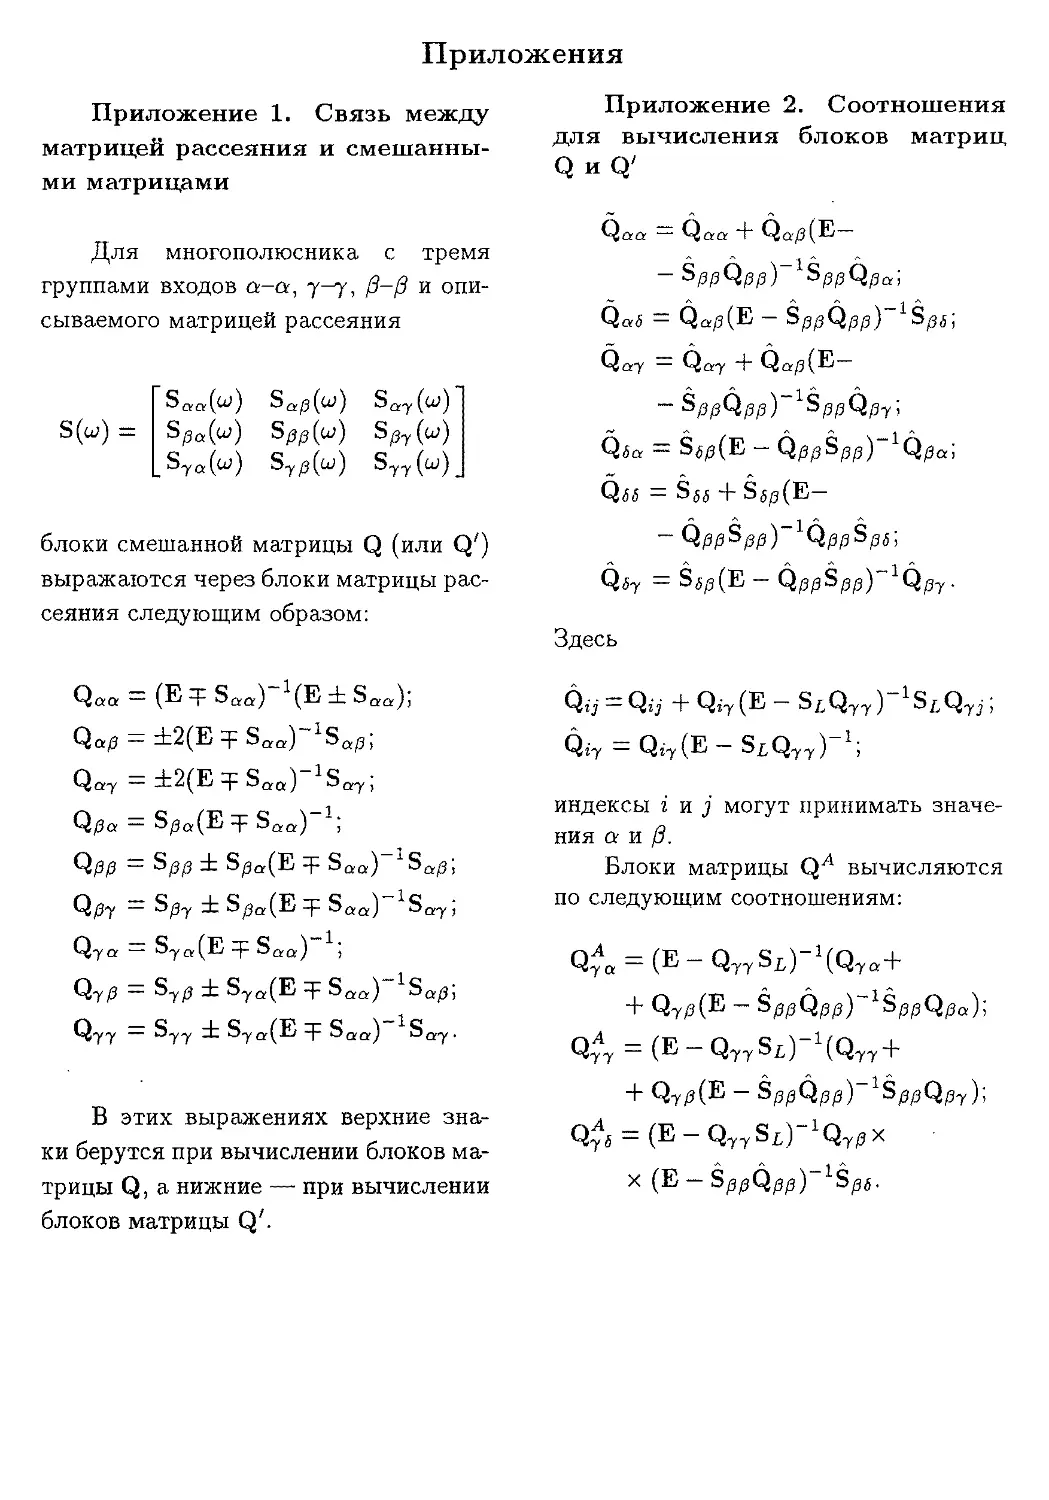 Приложение 1. Связь между матрицей рассеяния и смешанными матрицами
Приложение 2. Соотношения для вычисления блоков матриц Q и Q'